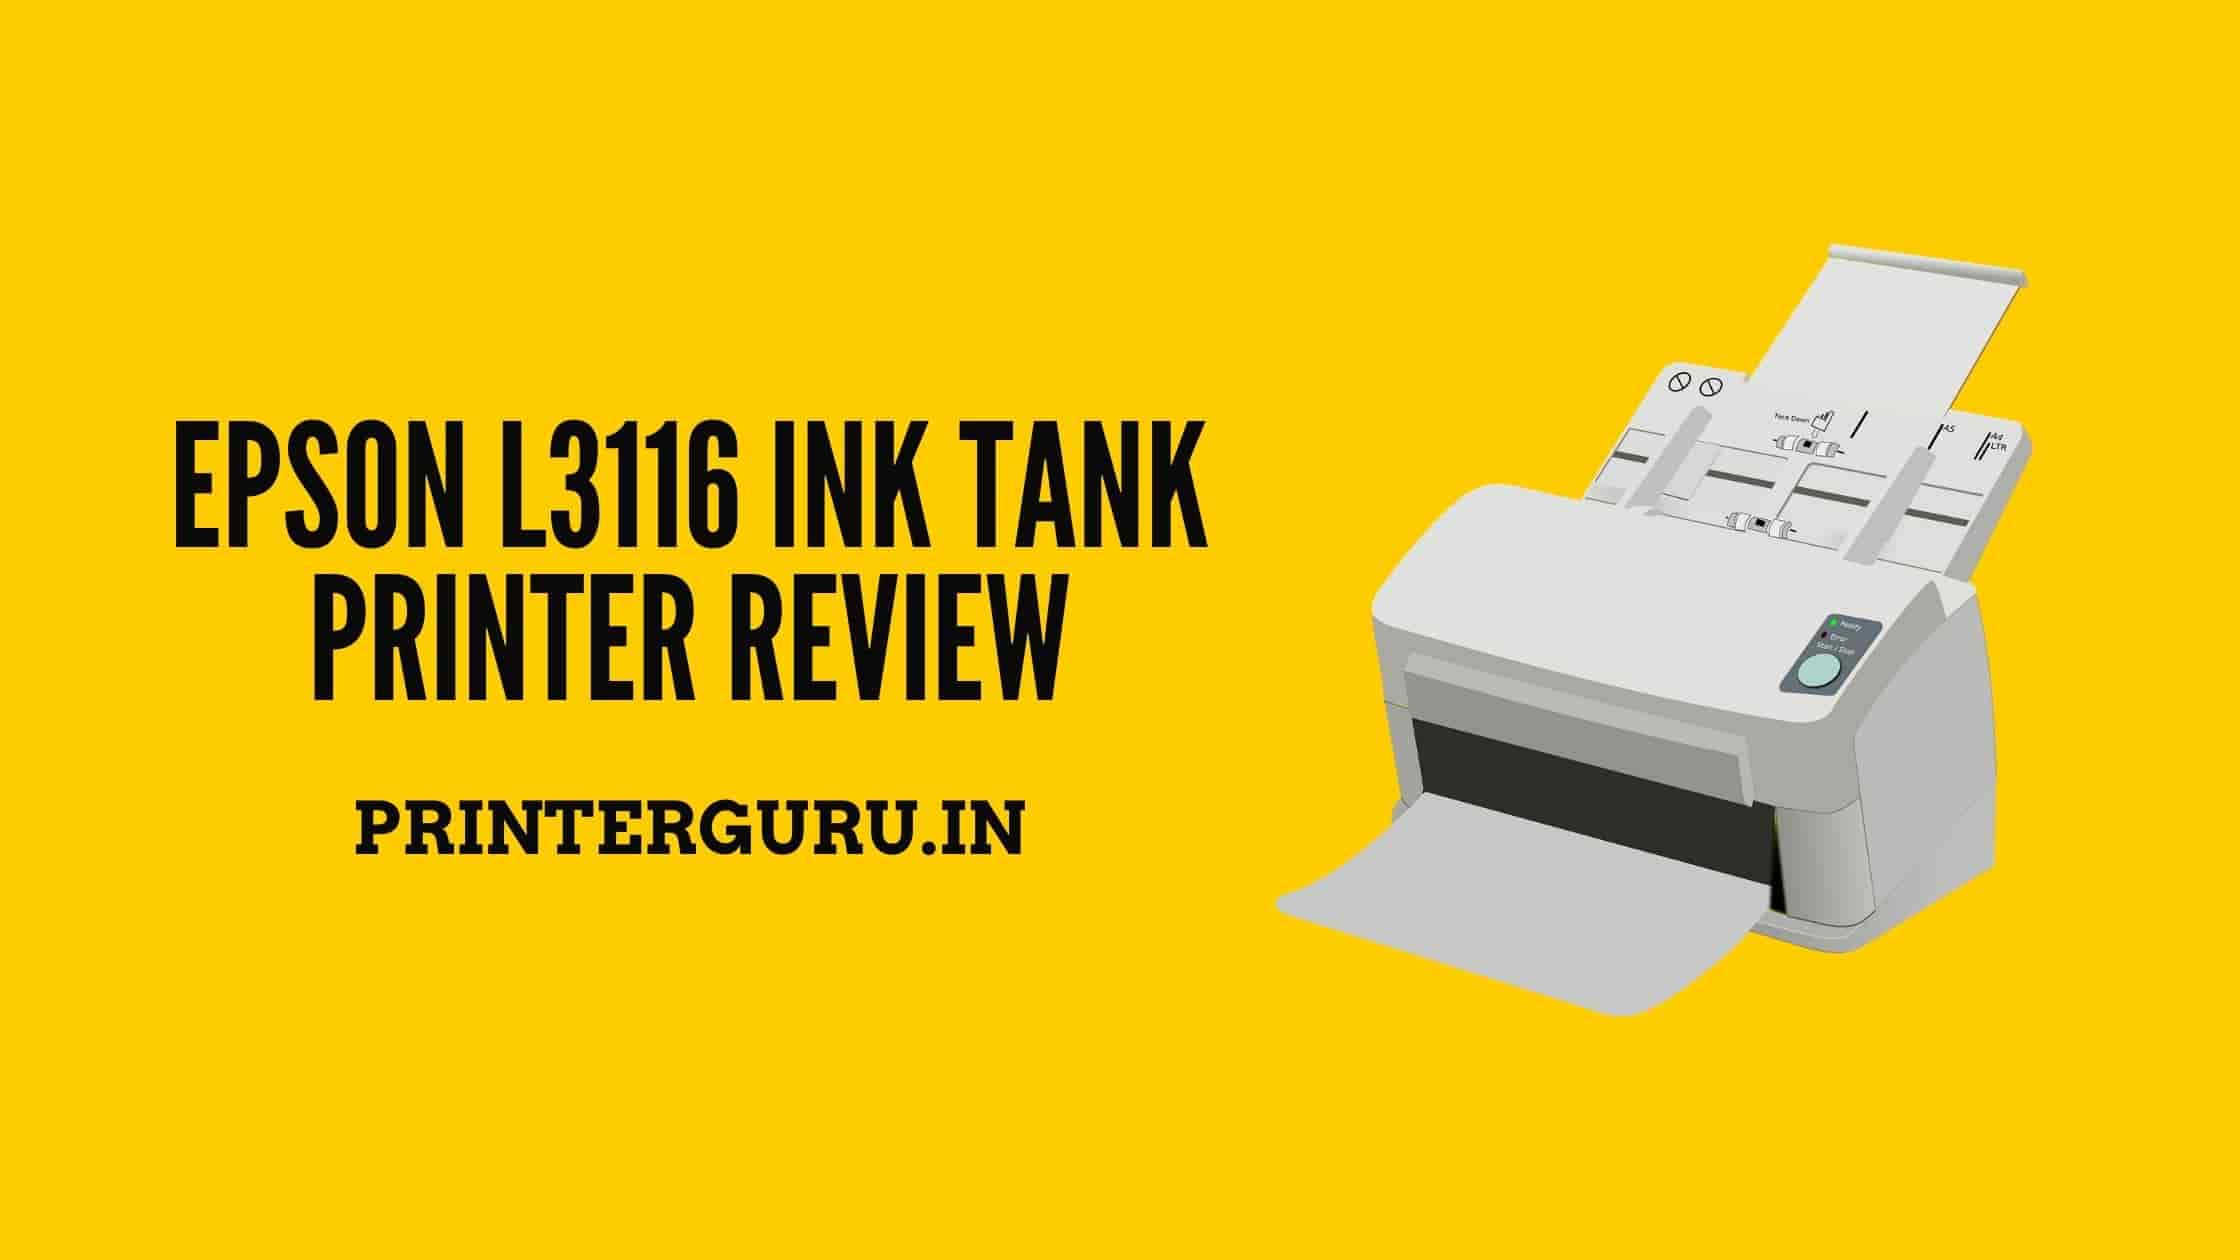 Epson L3116 Ink Tank Printer Review